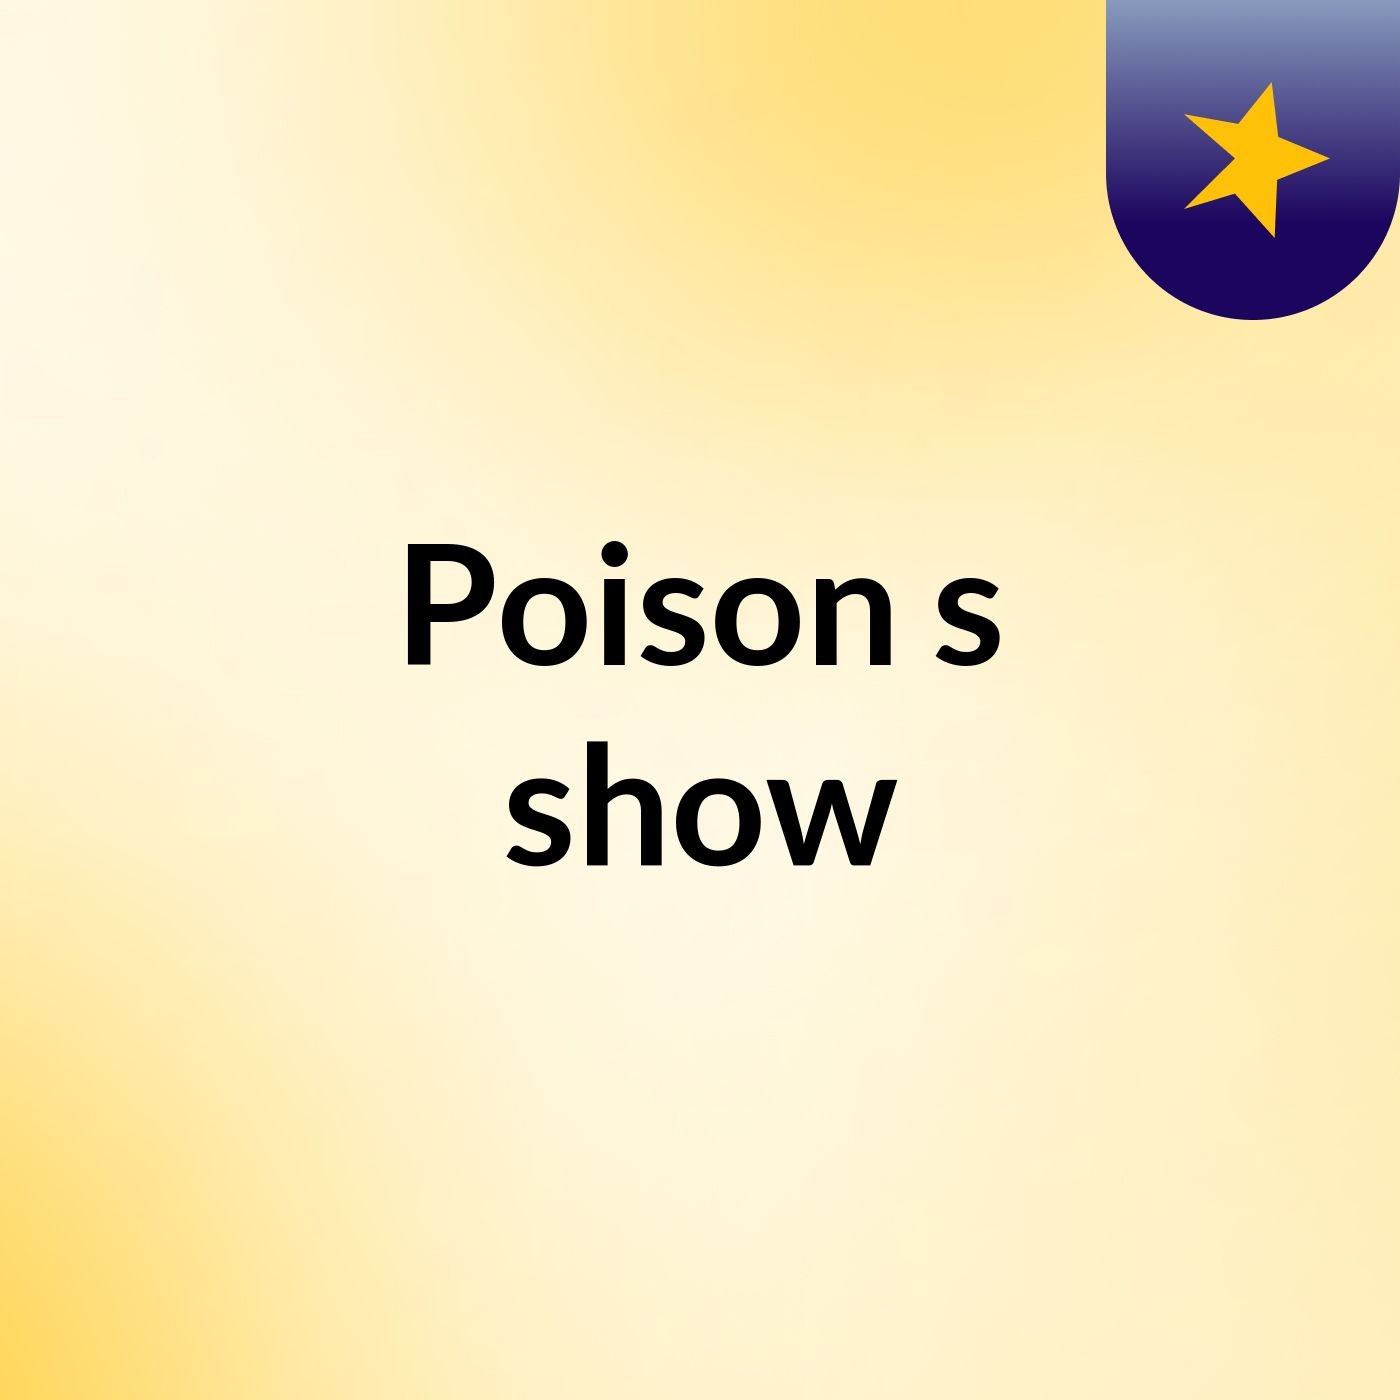 Poison's show